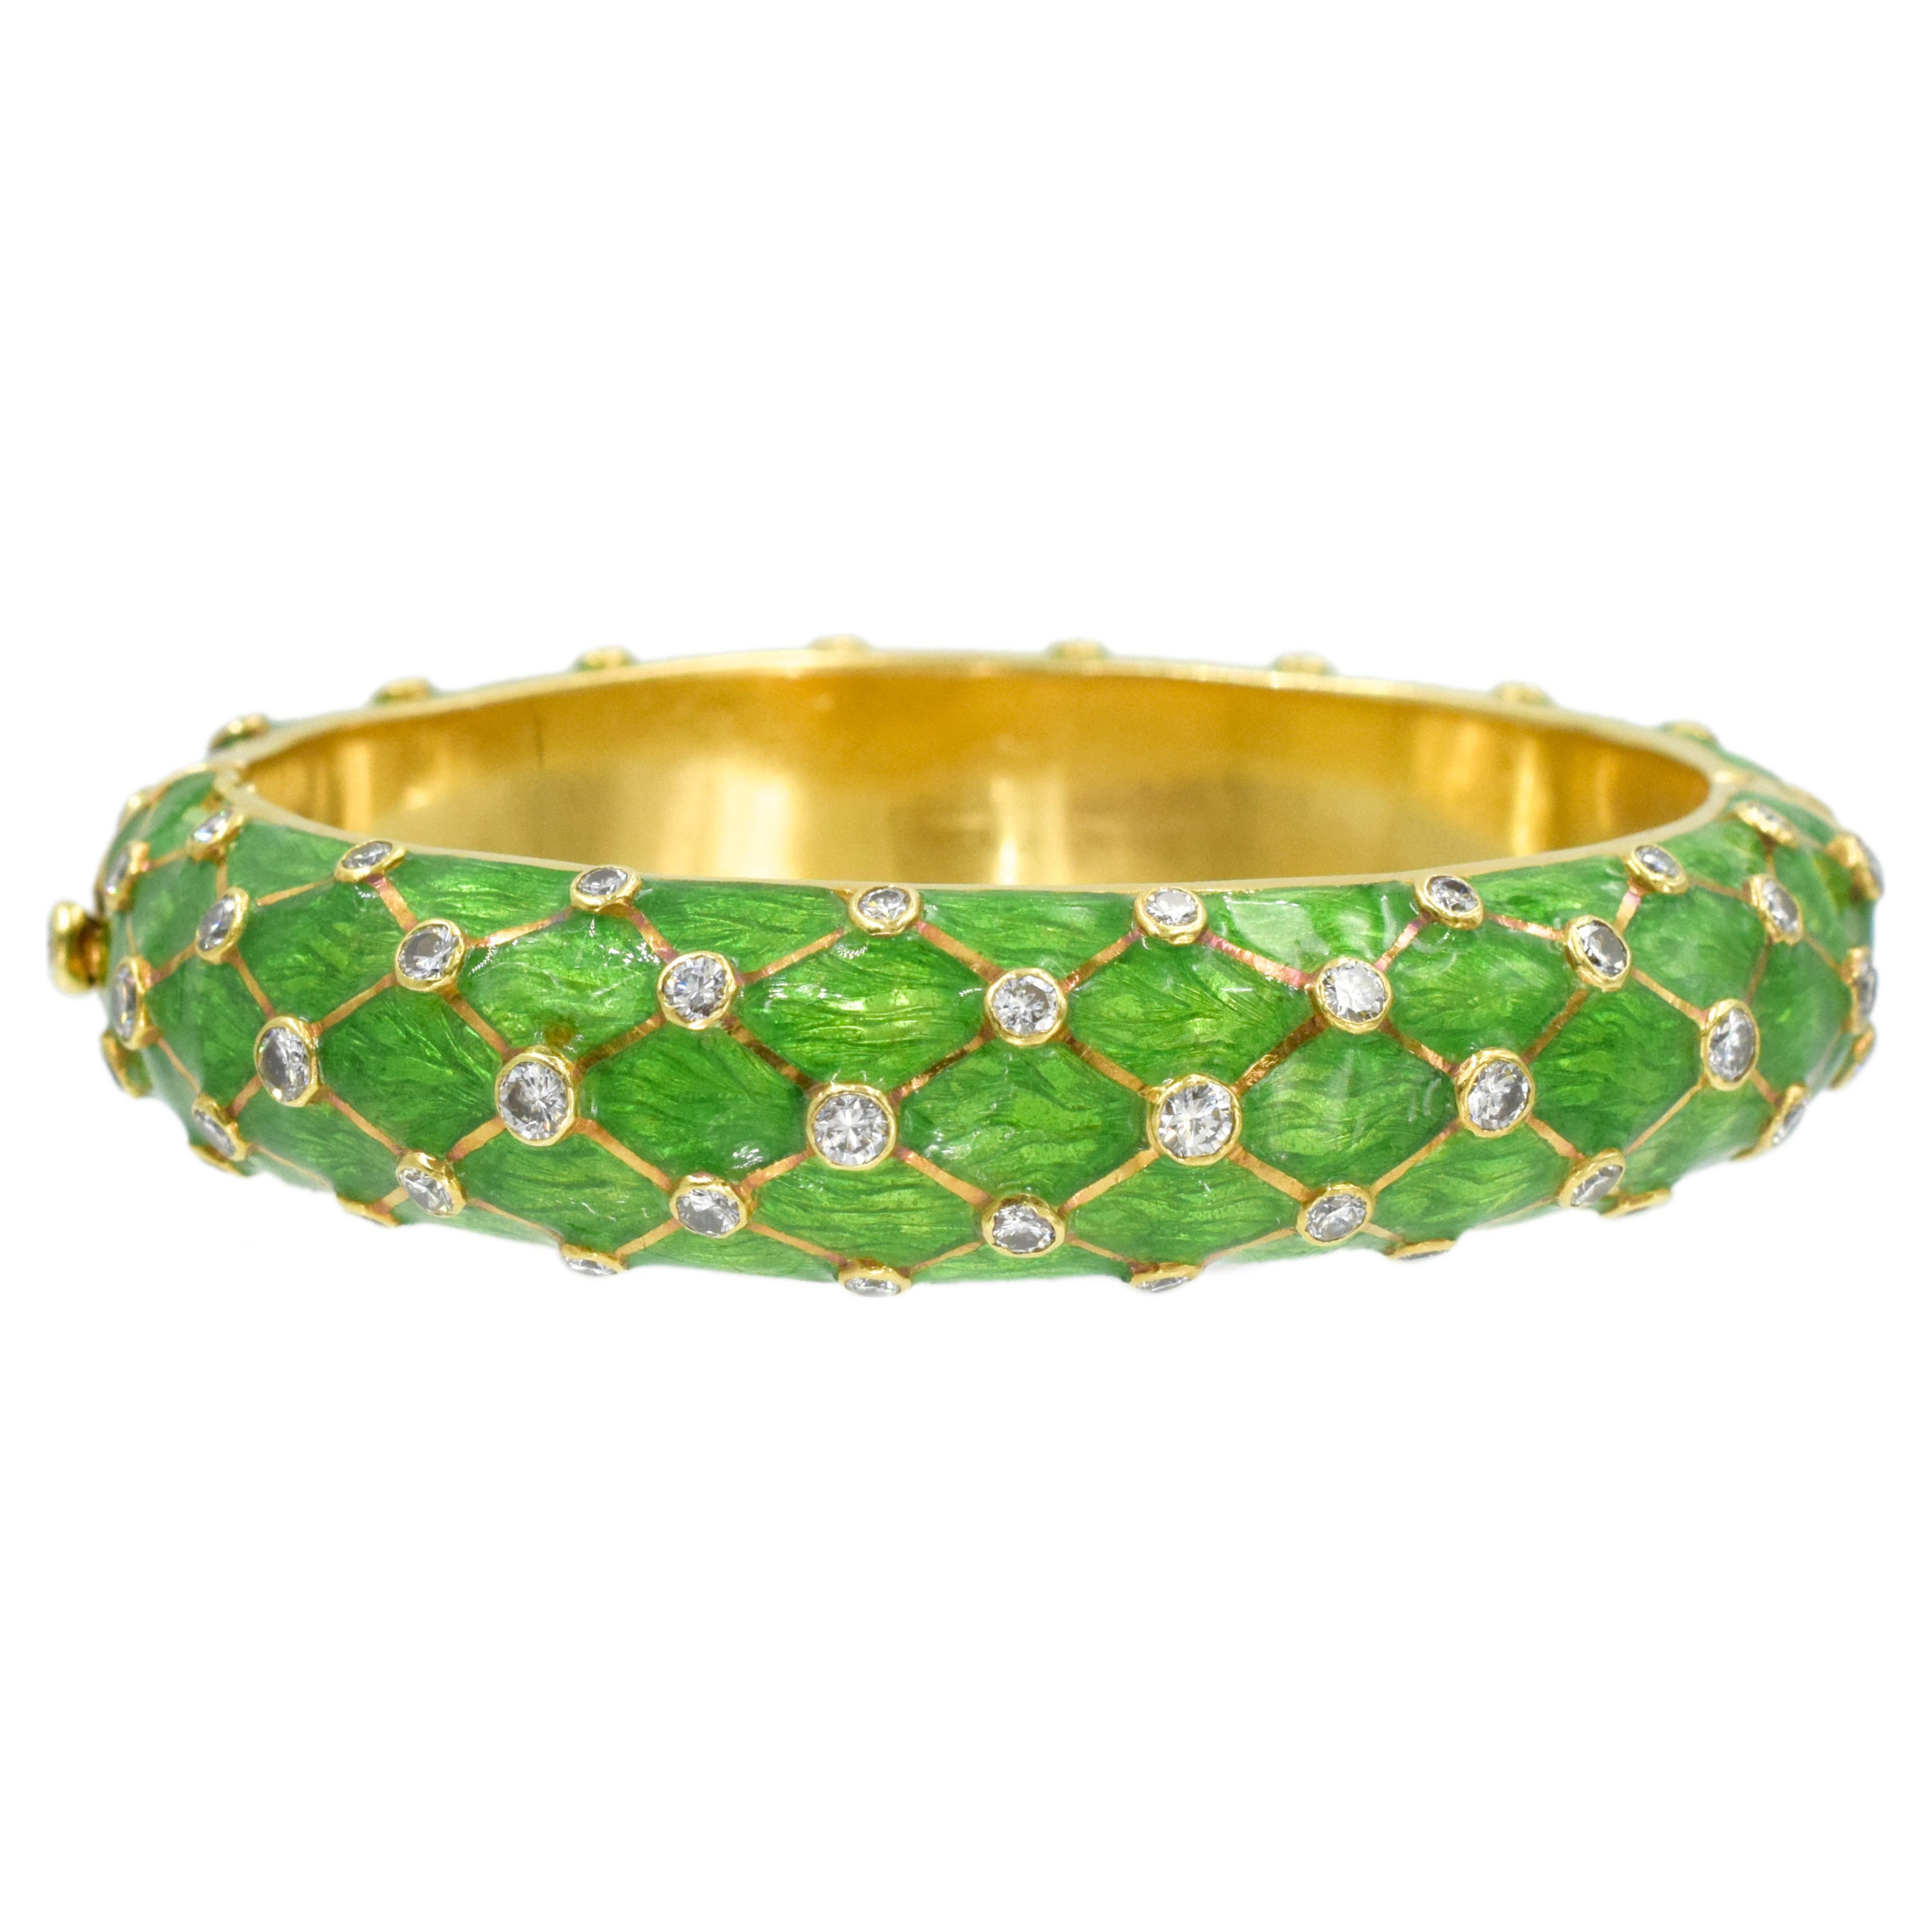 Tiffany & Co. Gold, grüne Emaille und Diamant-Armspange
Dieser Armreif hat einen Bombé-Armreif, der mit gemustertem apfelgrünem Email überzogen ist und durchgehend mit diagonalen Reihen von 85 runden Diamanten in Collet-Fassung von ap. 3.20 Karat,